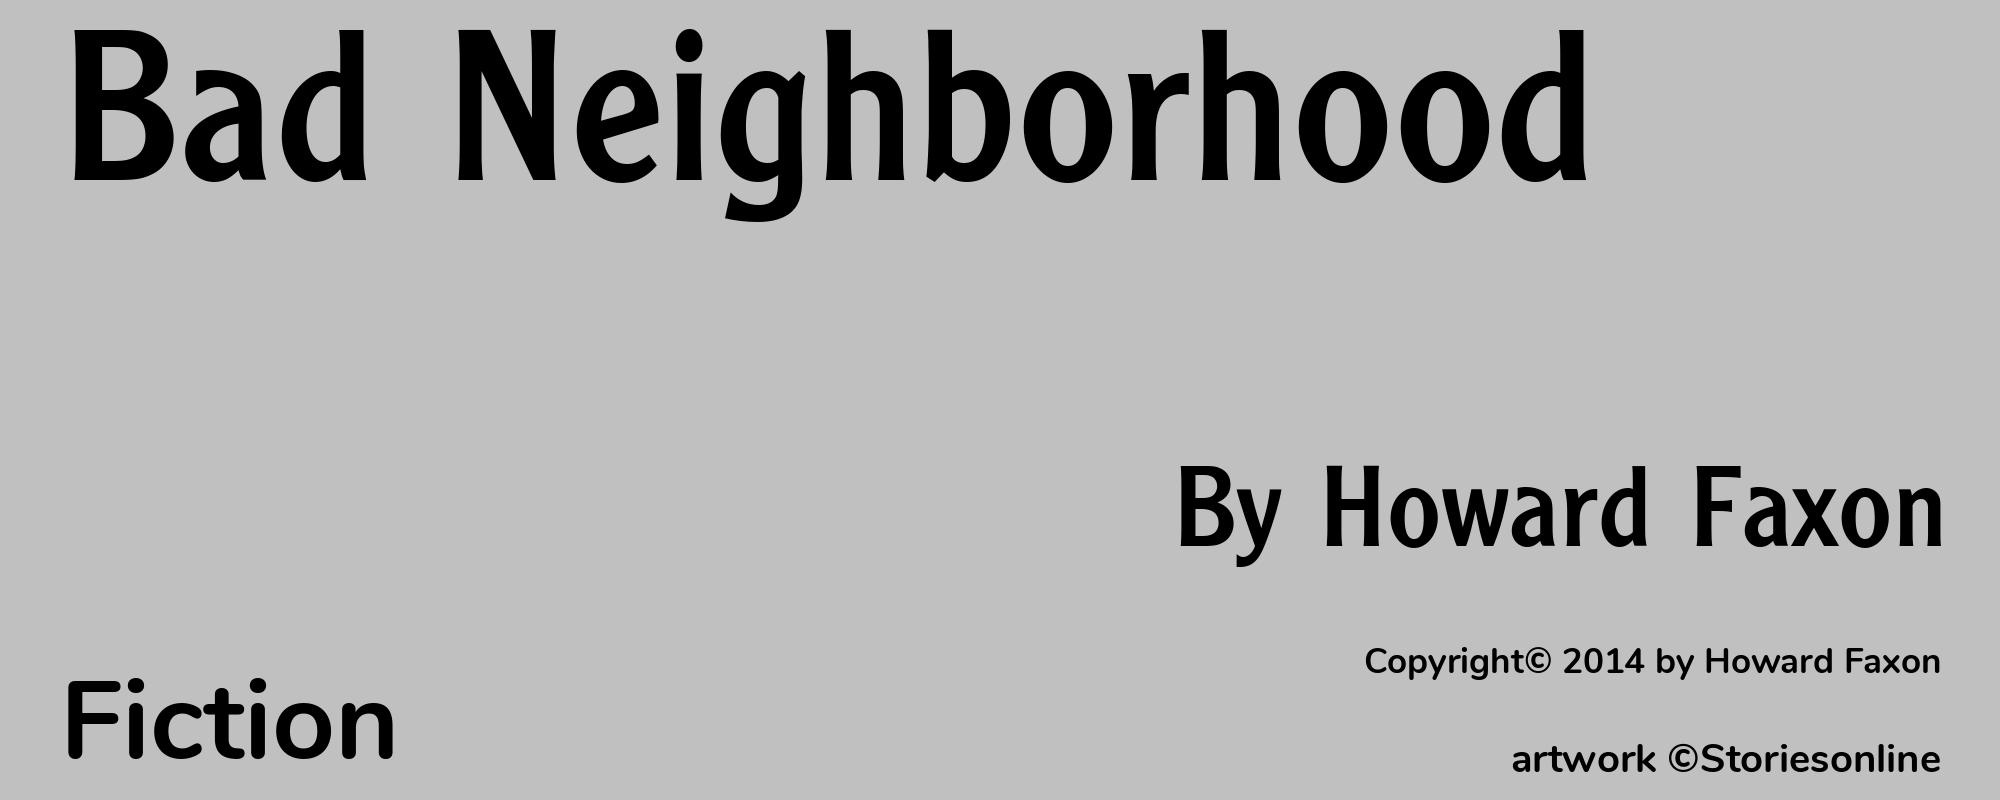 Bad Neighborhood - Cover